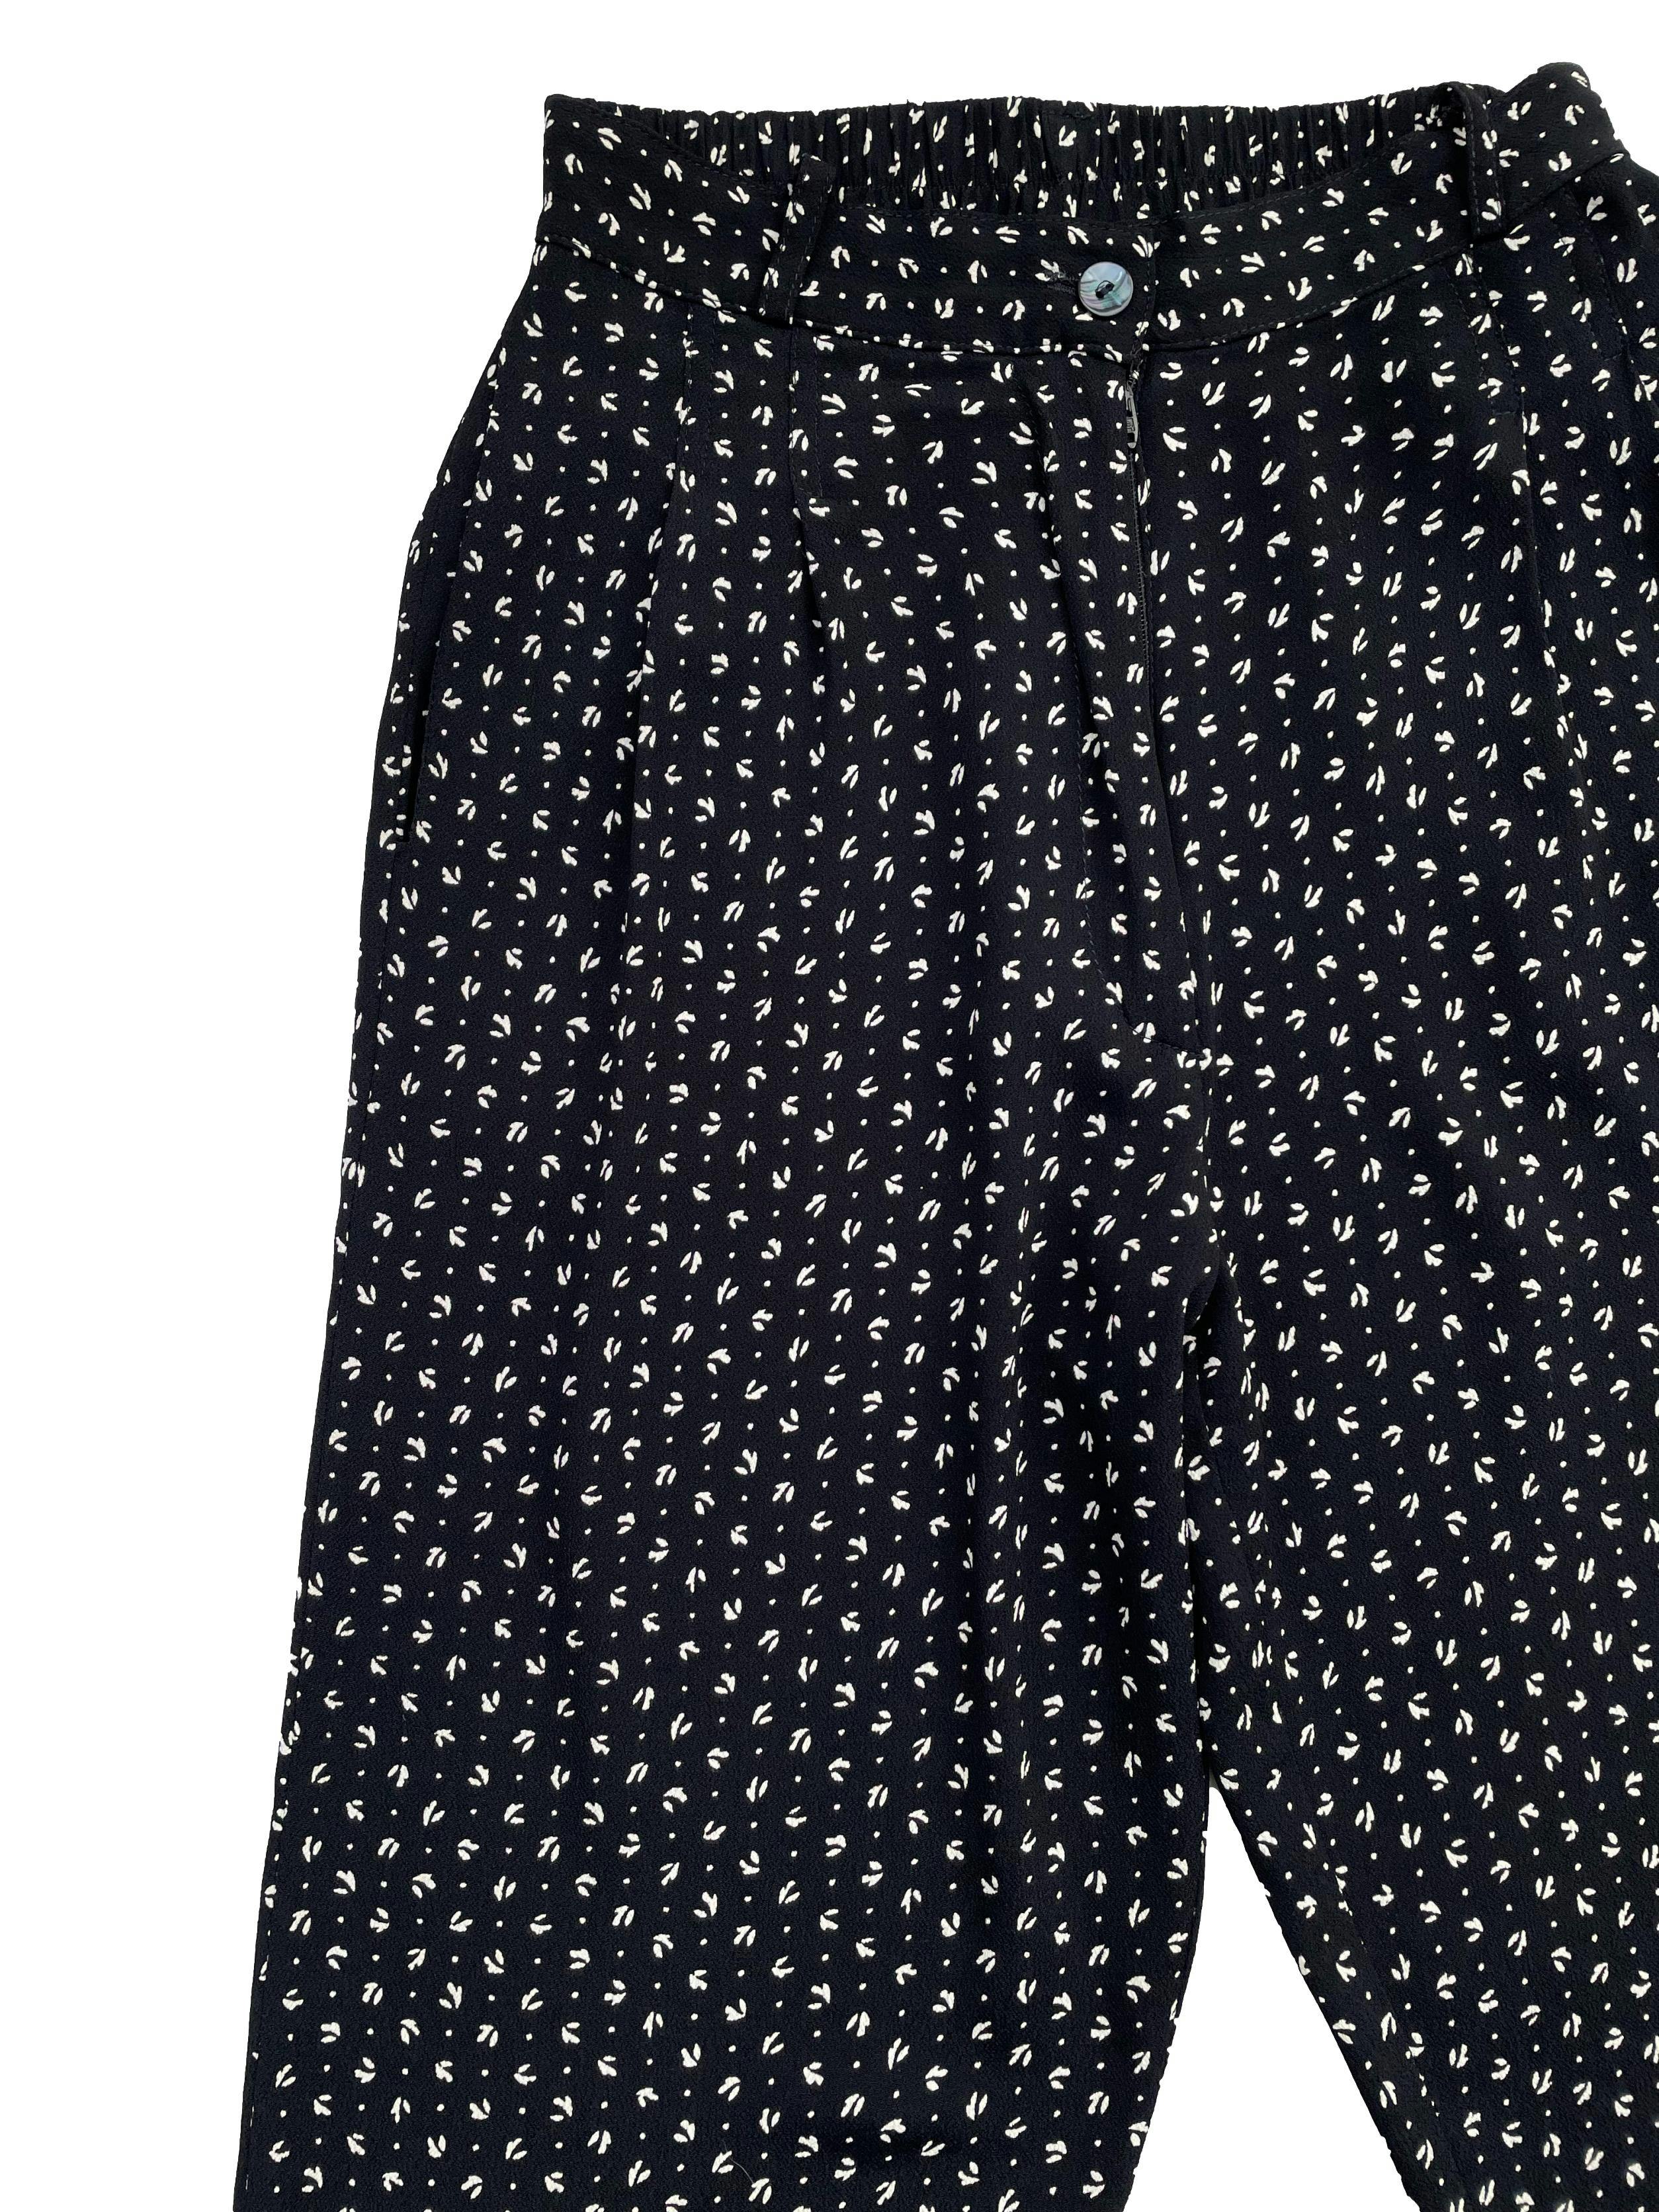 Pantalón vintage corte slim en blanco y negro ,con cintura elástica, bolsillos, presillas y cierre .Largo 91cm.